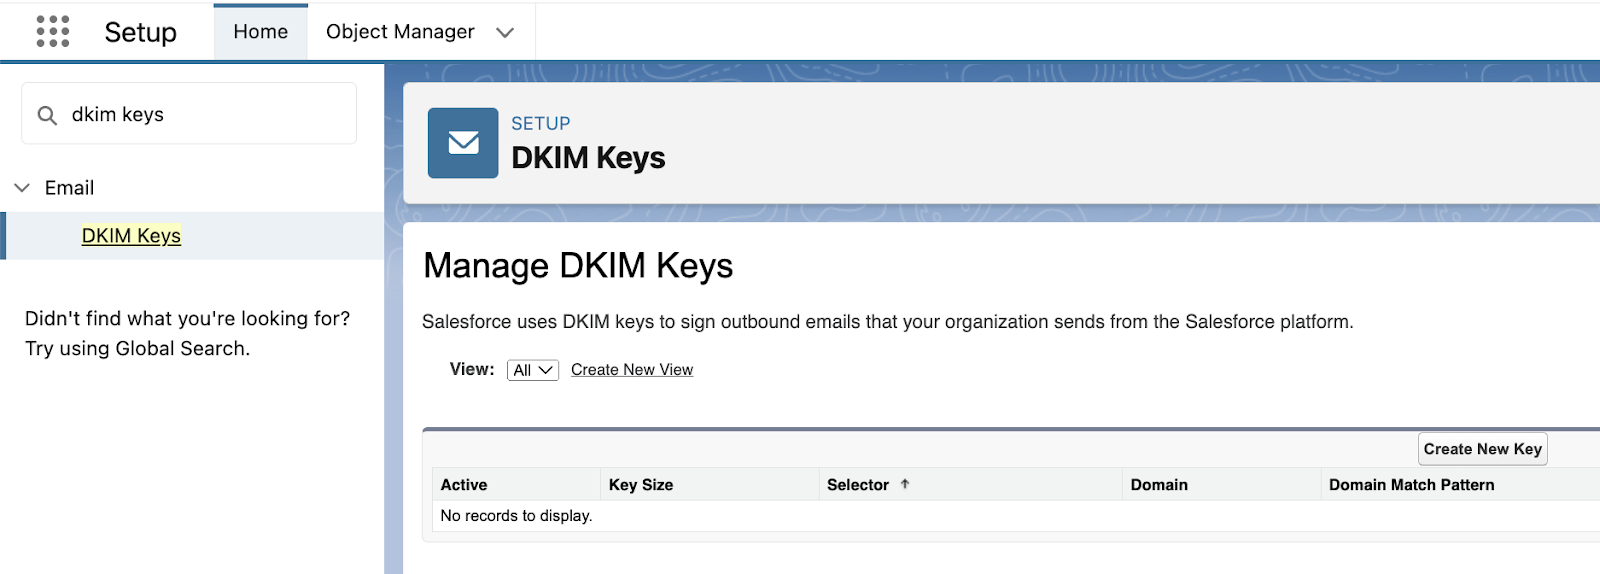 Secure DKIM Keys in Lightning Experience 